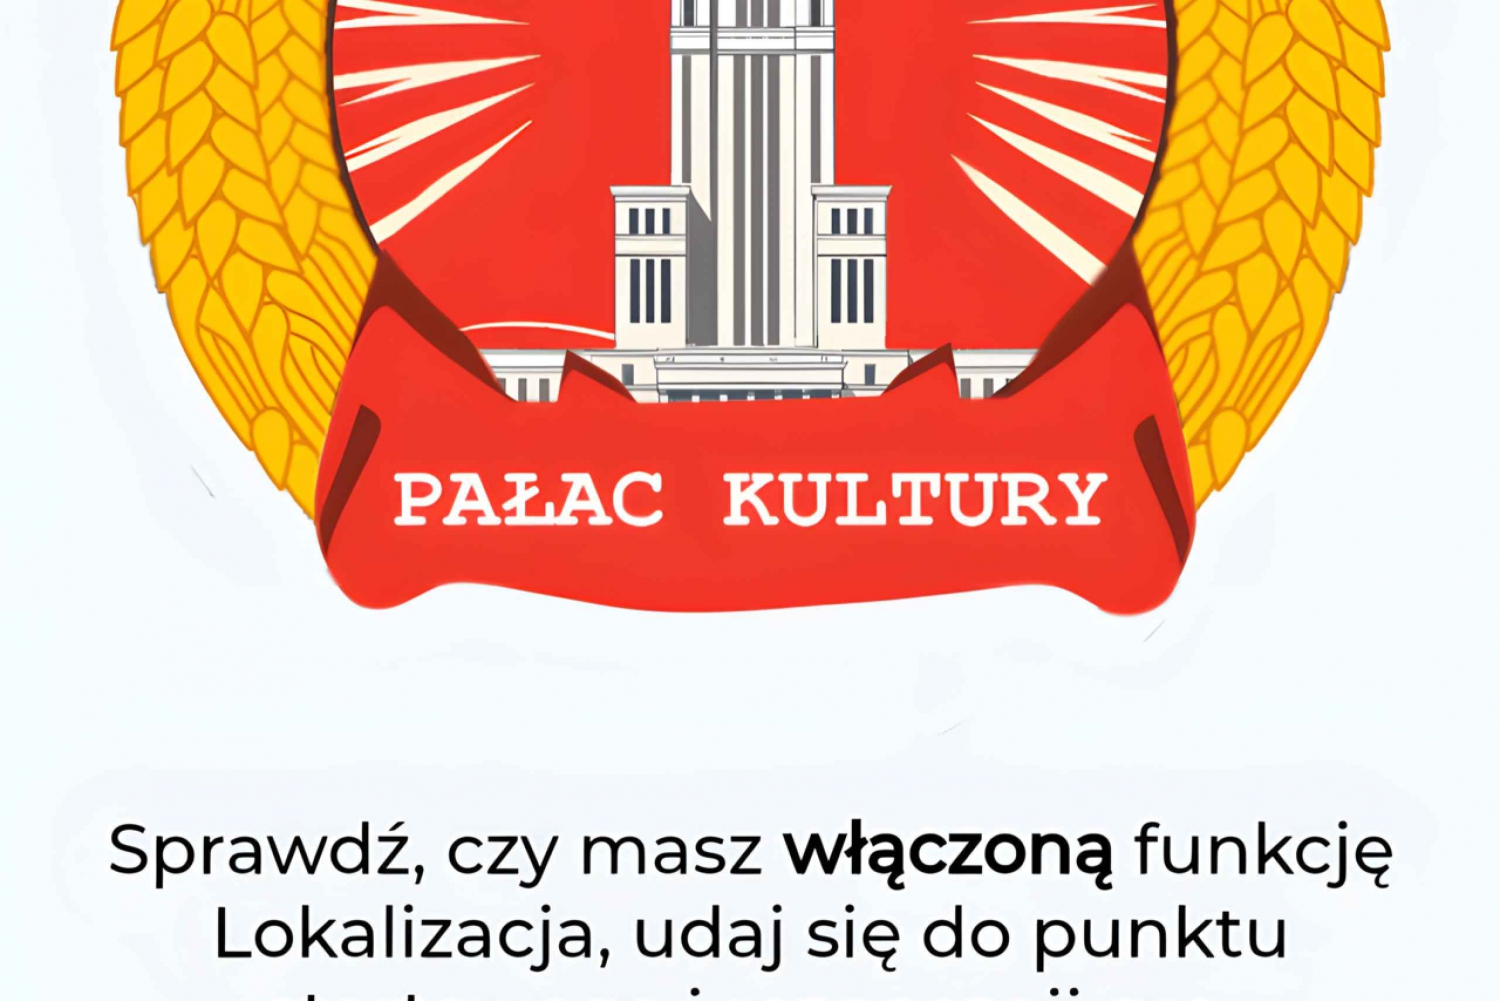 Varsova: Mission Palace of Culture - peli/mobiiliopas